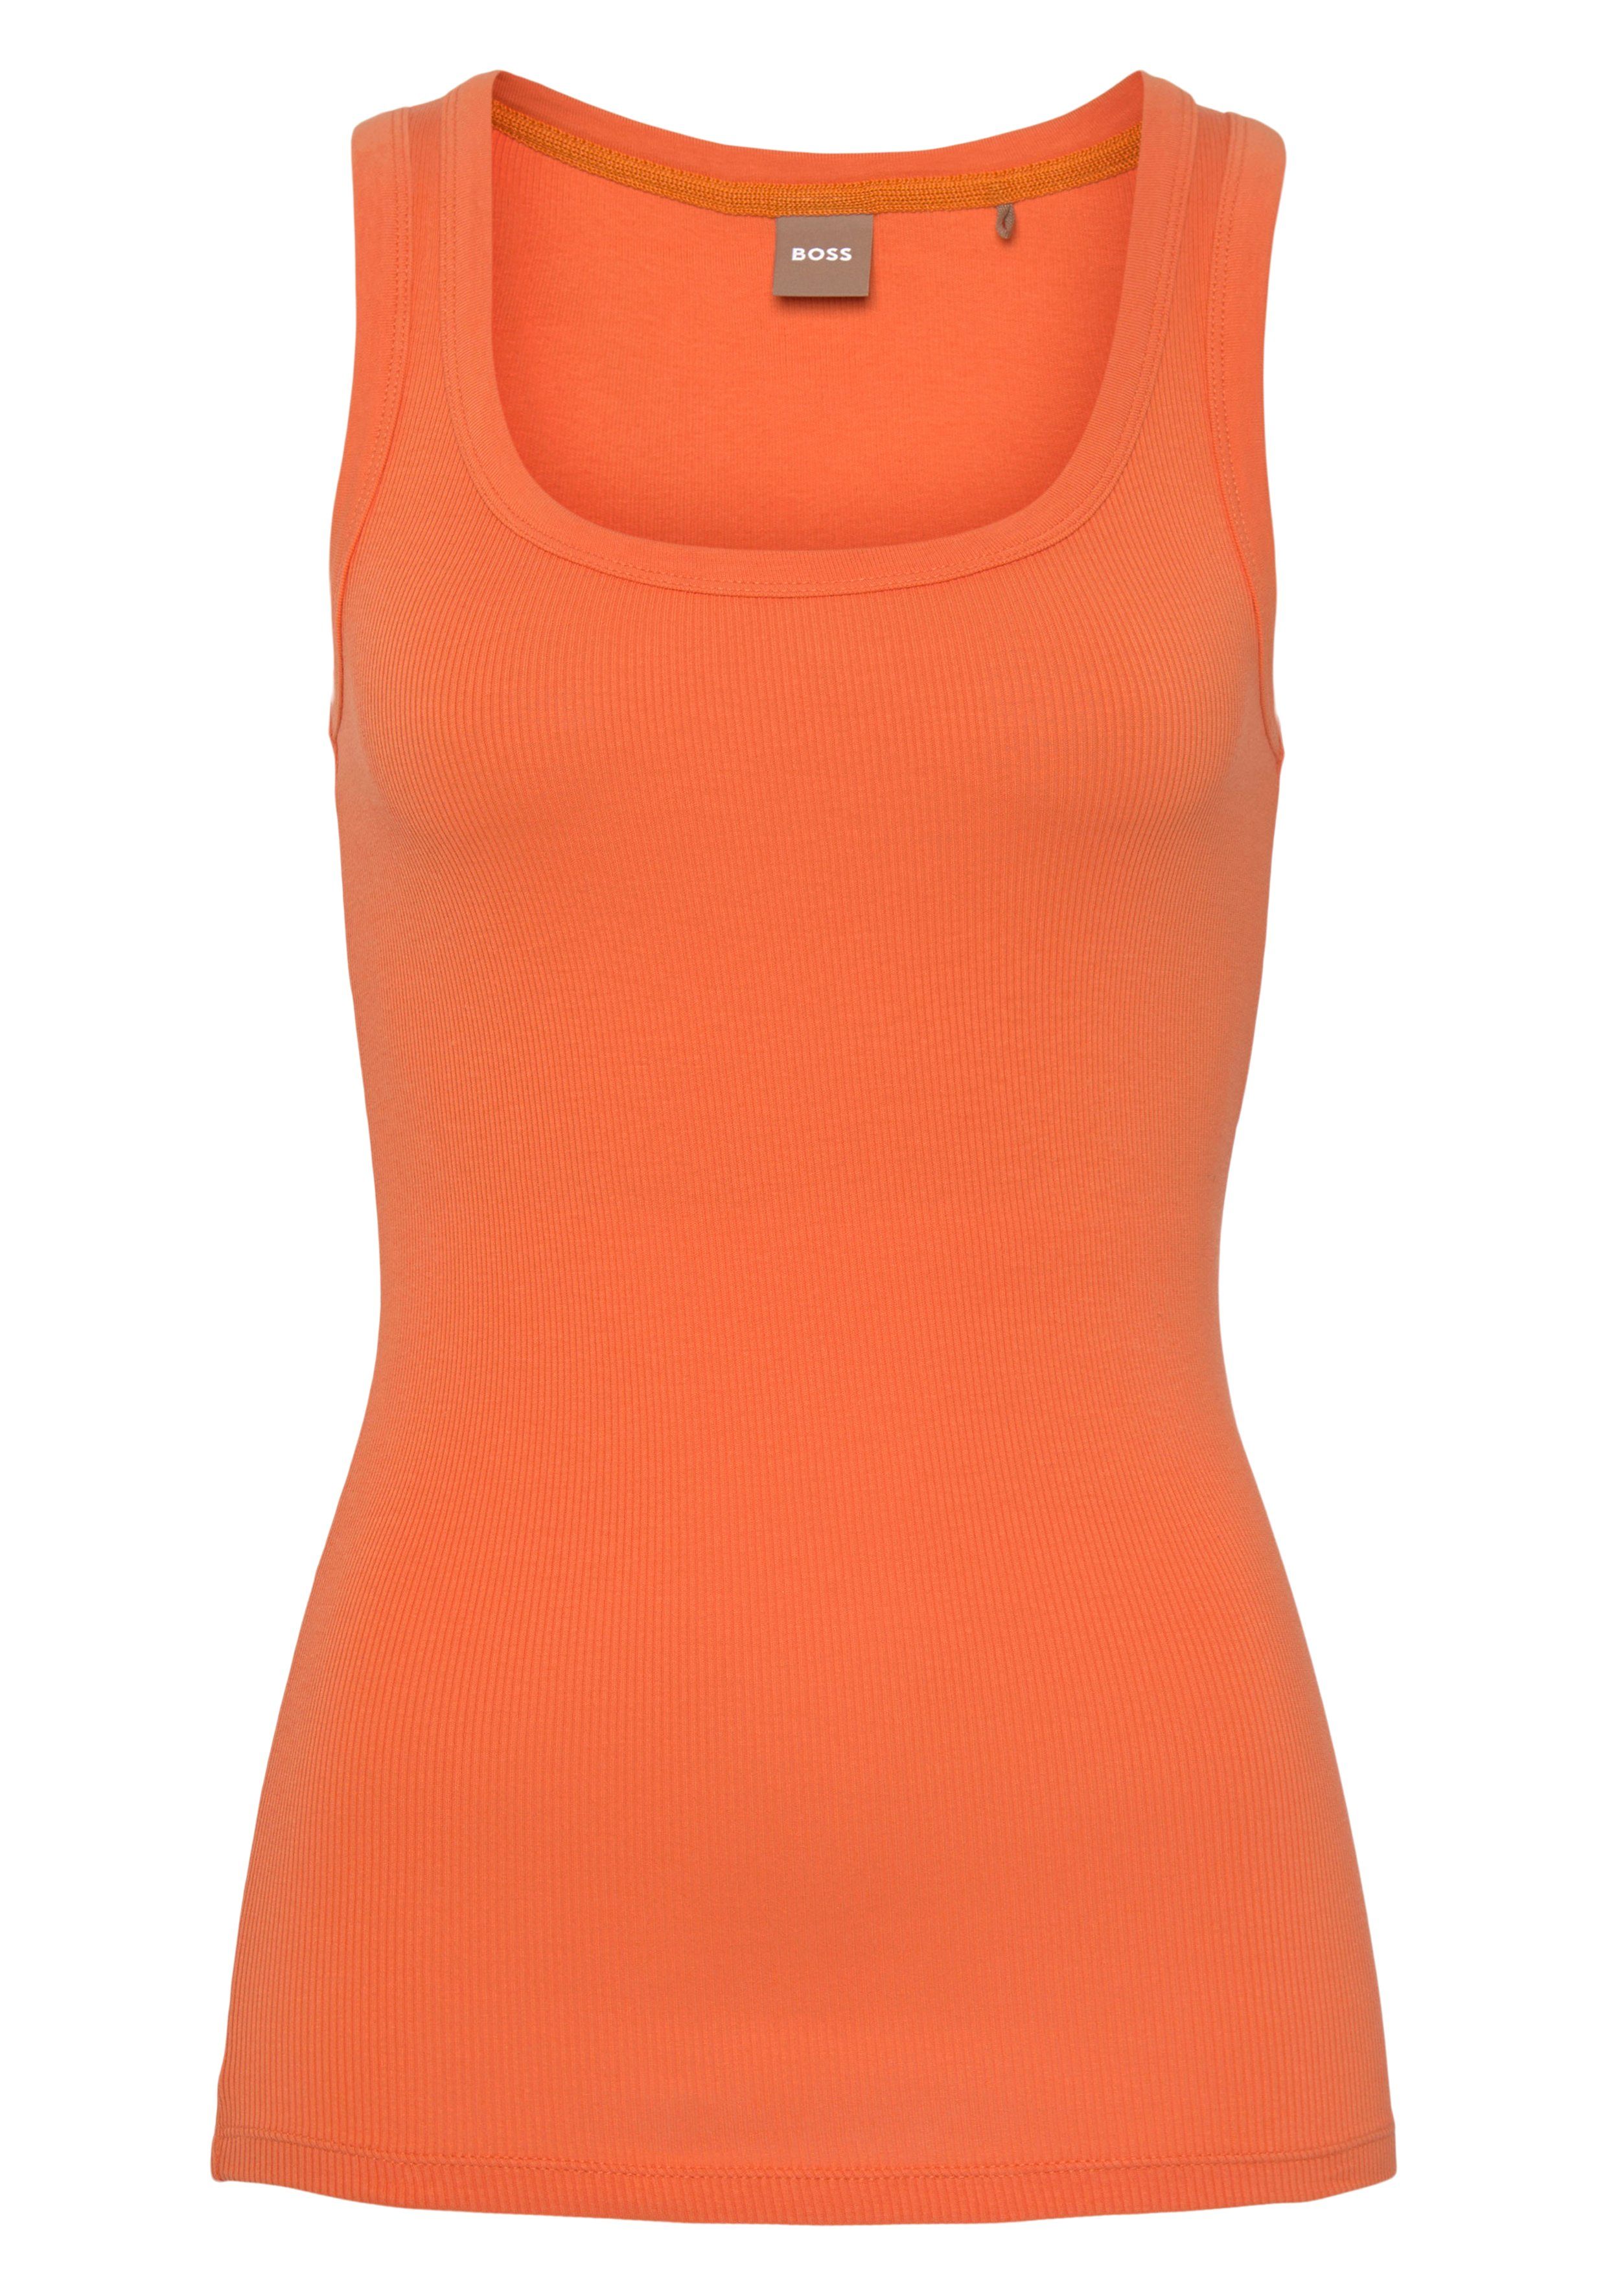 BOSS Bright_Orange innen Muskelshirt BOSS ORANGE Markenstreifen mit